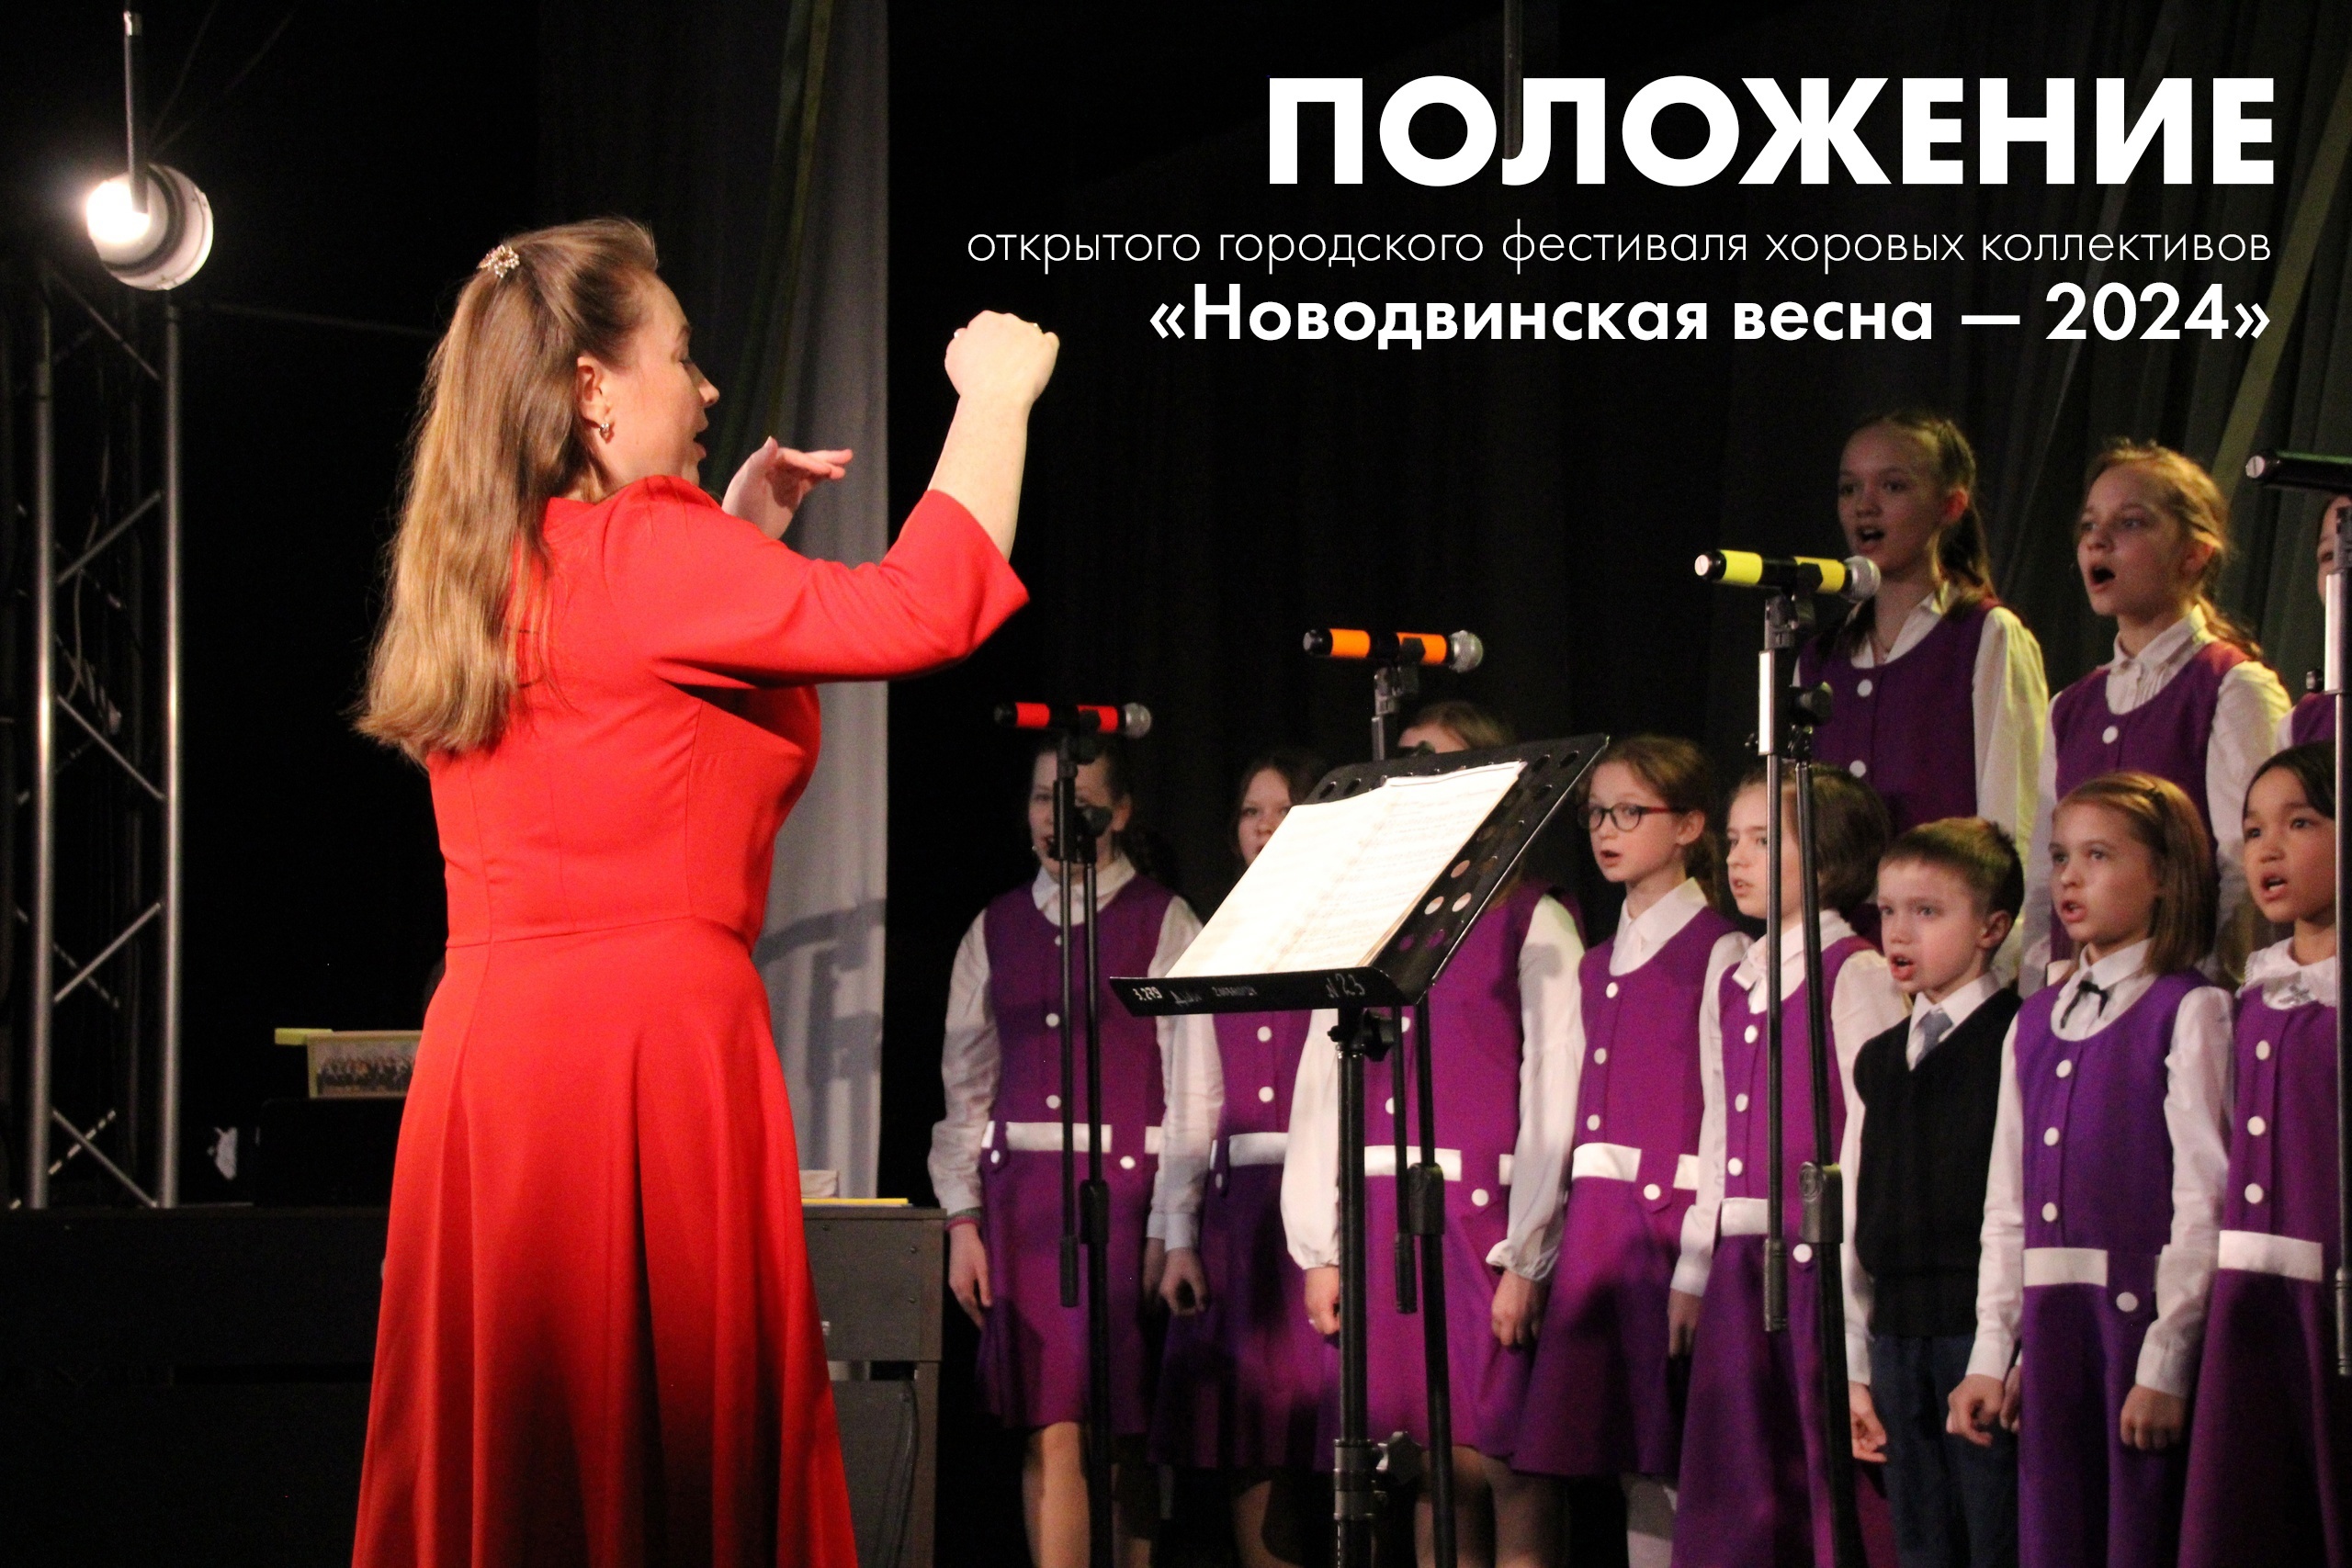 Новодвинский городской культурный центр продолжает приём заявок на открытый городской фестиваль хоровых коллективов «Новодвинская весна — 2024».